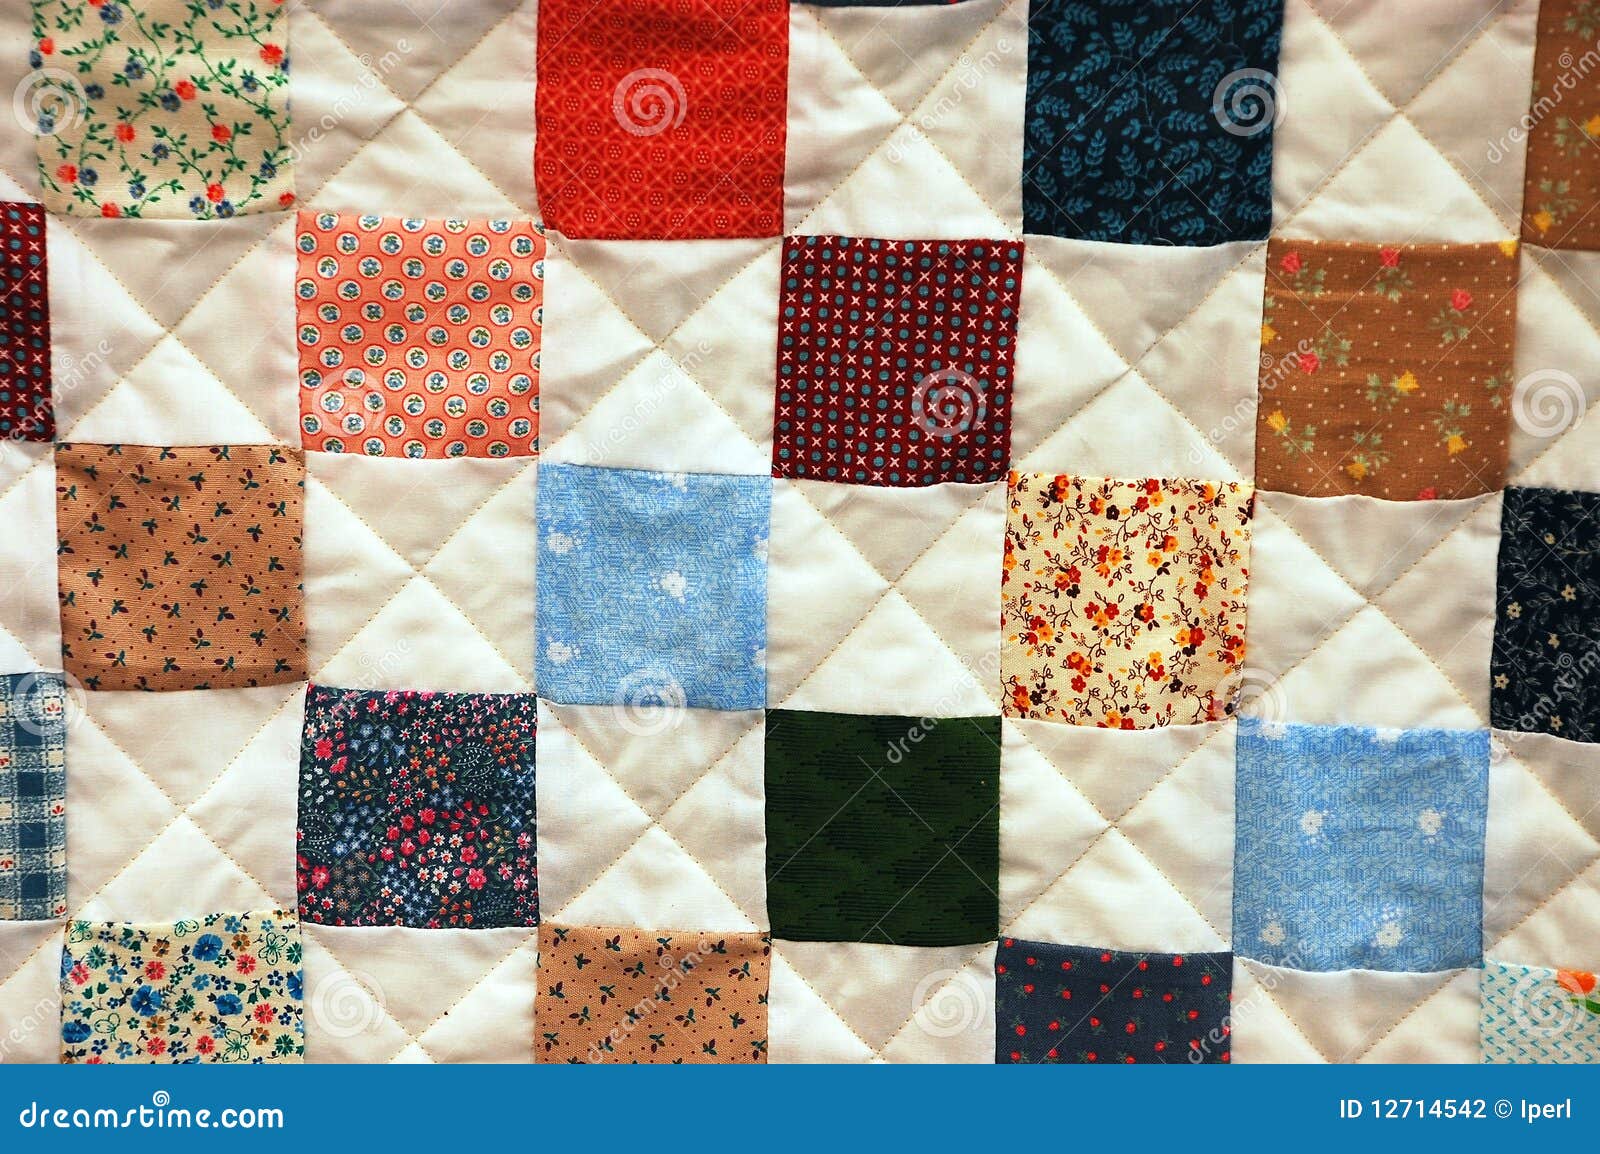 clip art patchwork quilt - photo #33